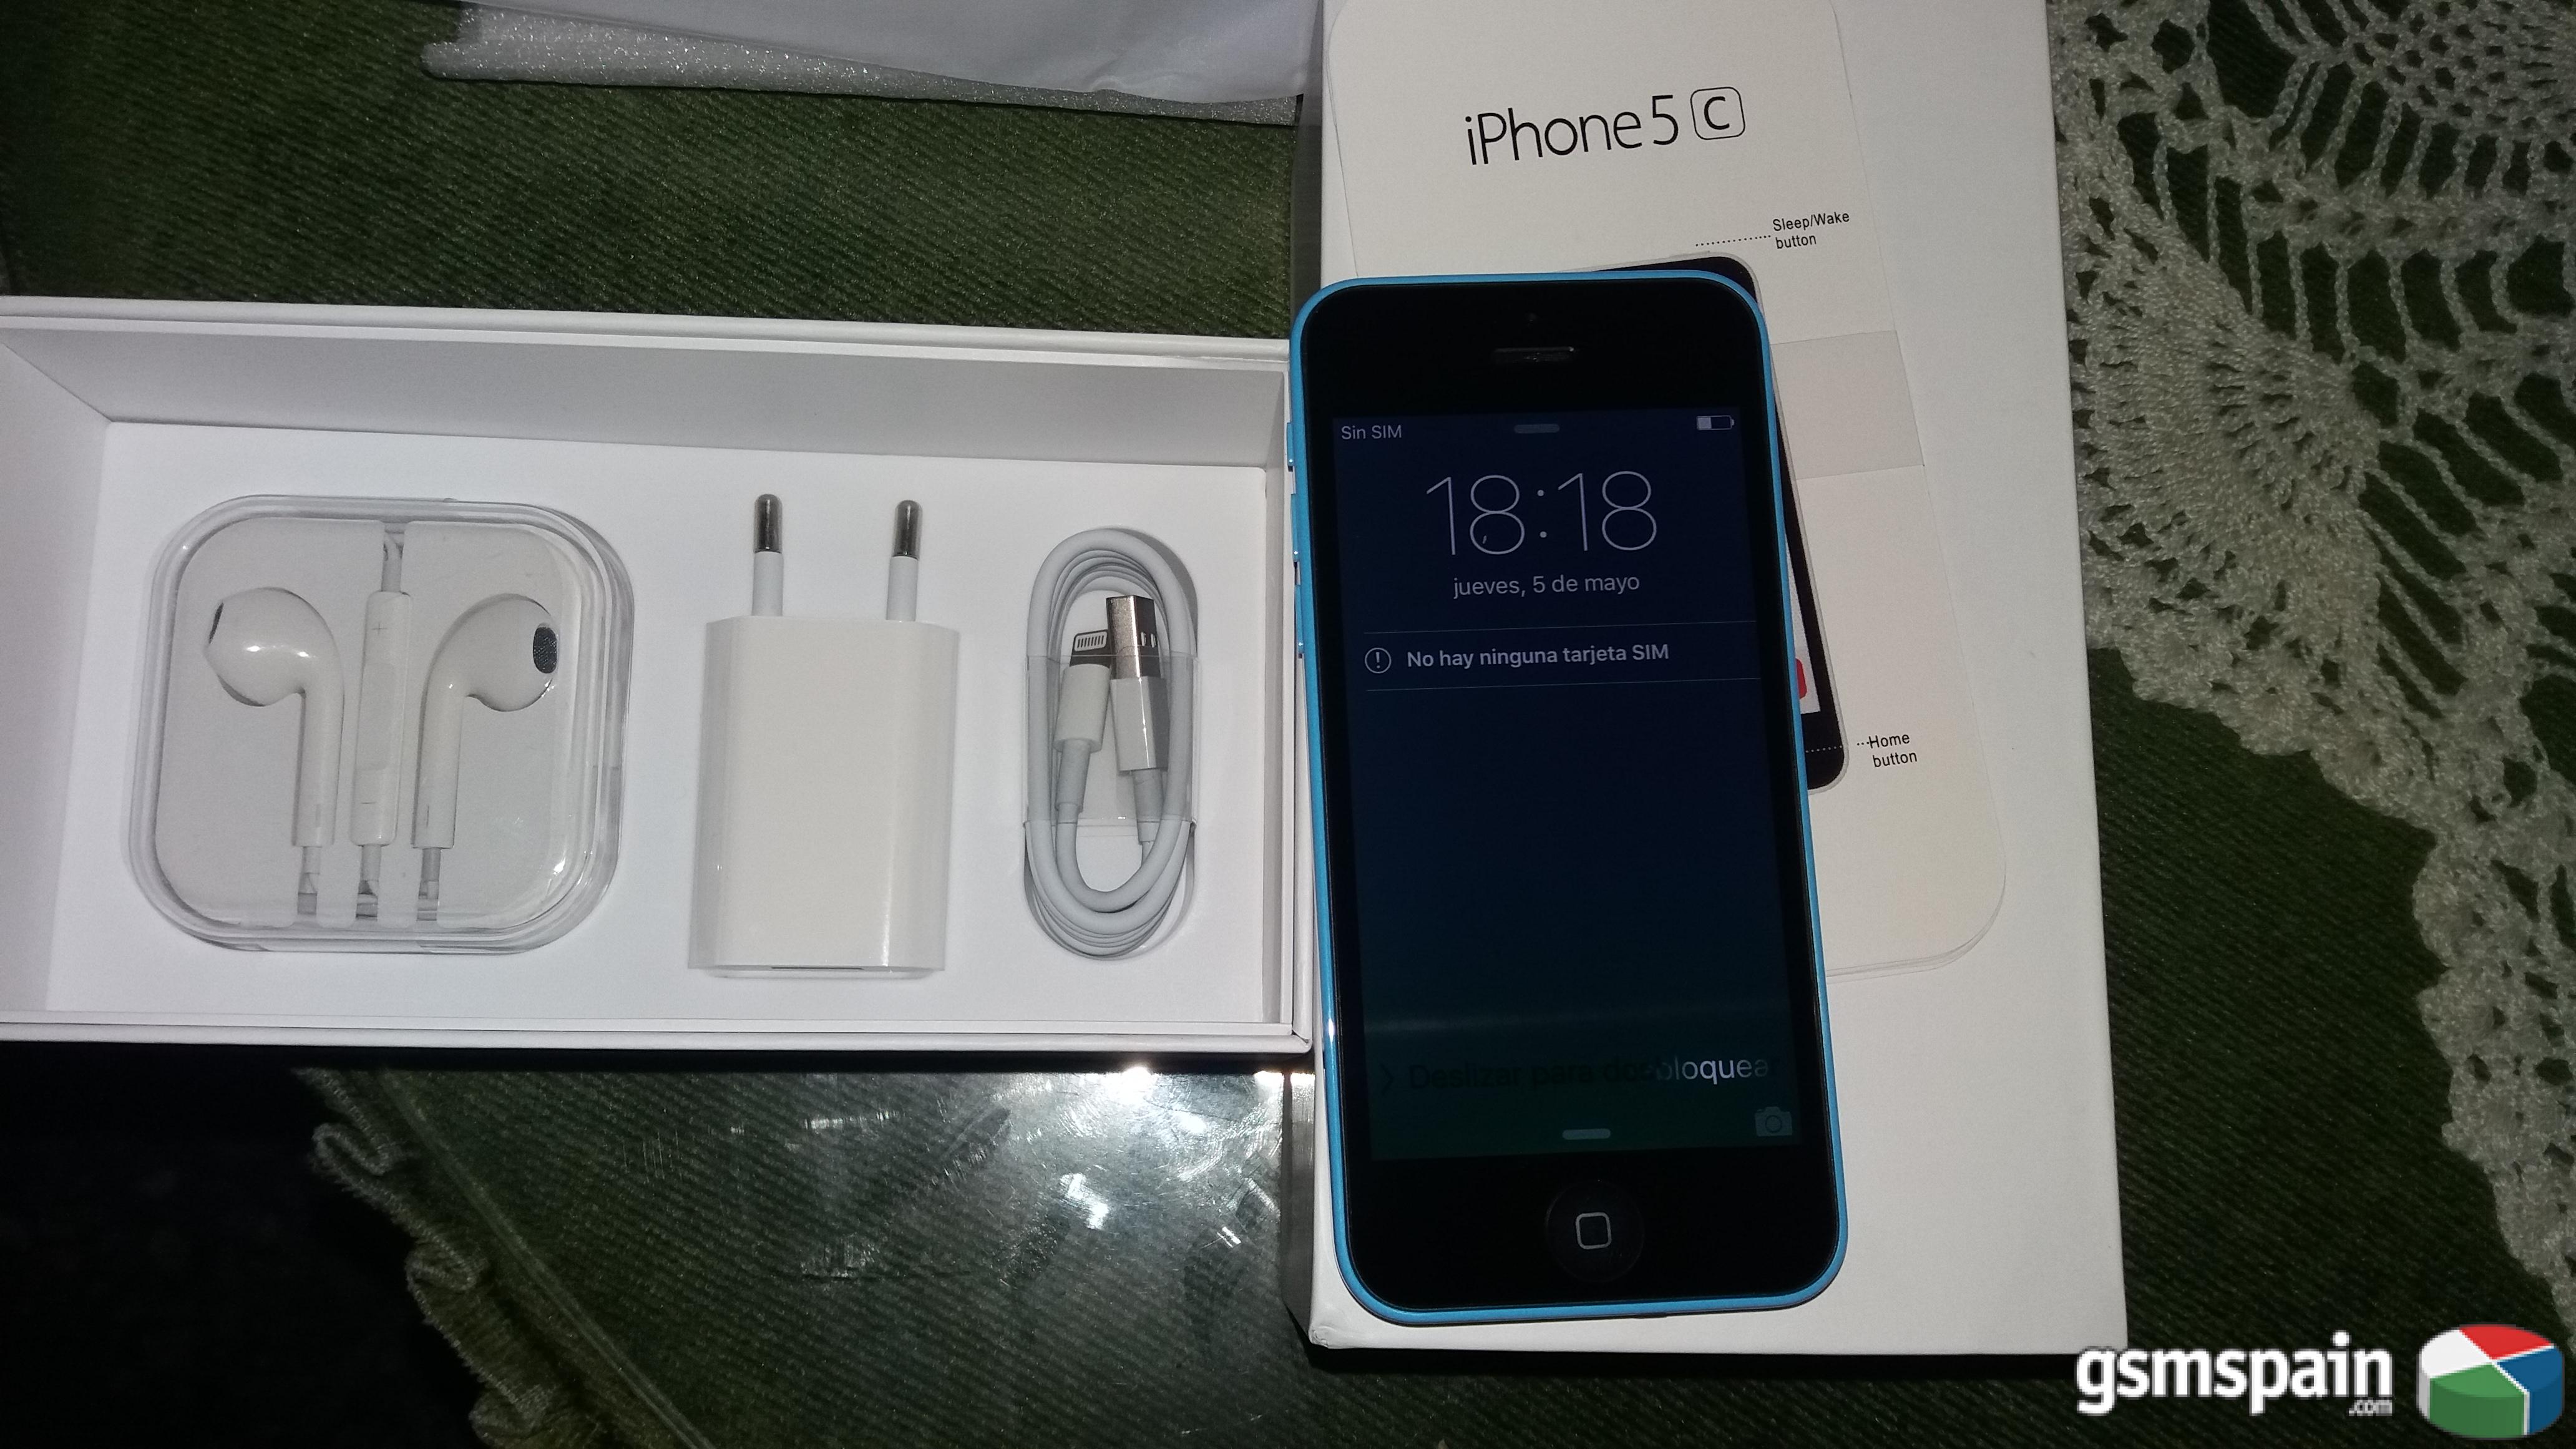 [VENDO] iPHONE 5C 8GB LIBRE Azul claro como Nuevo